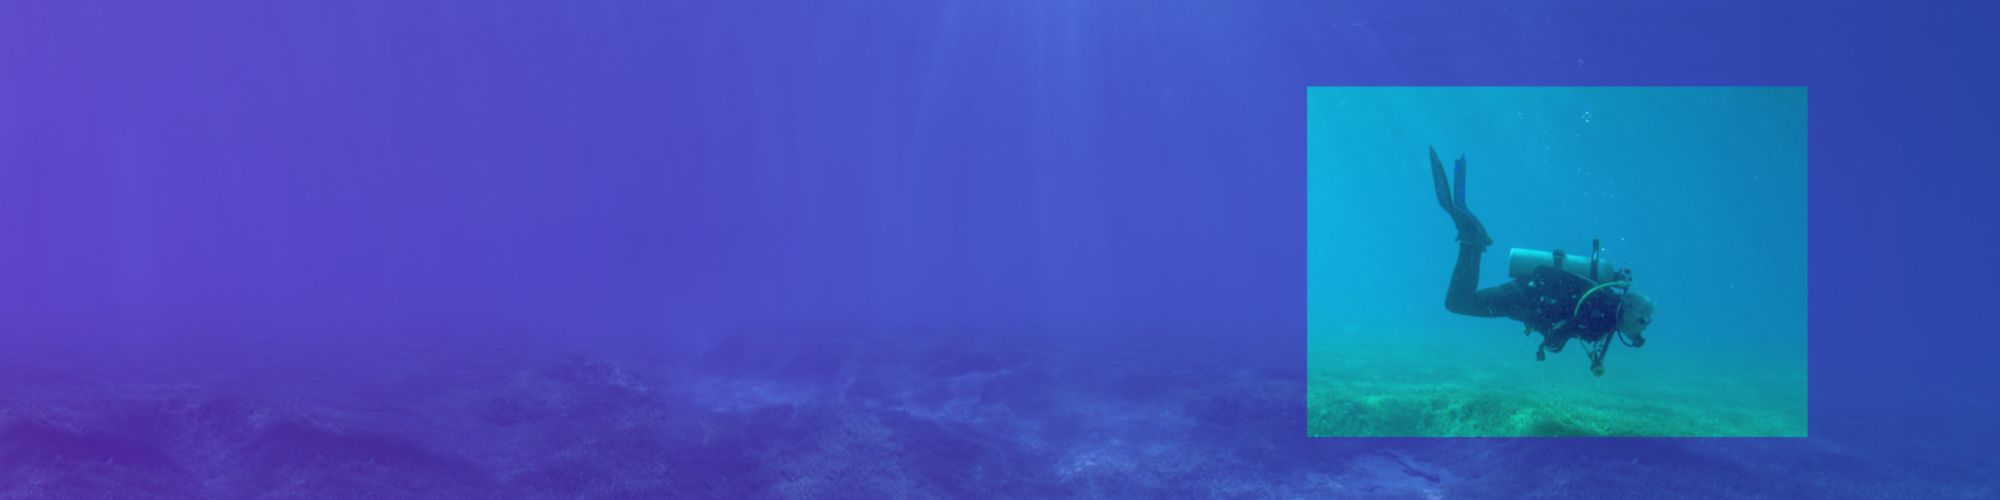 scuba diver in purple-blue gradient motif